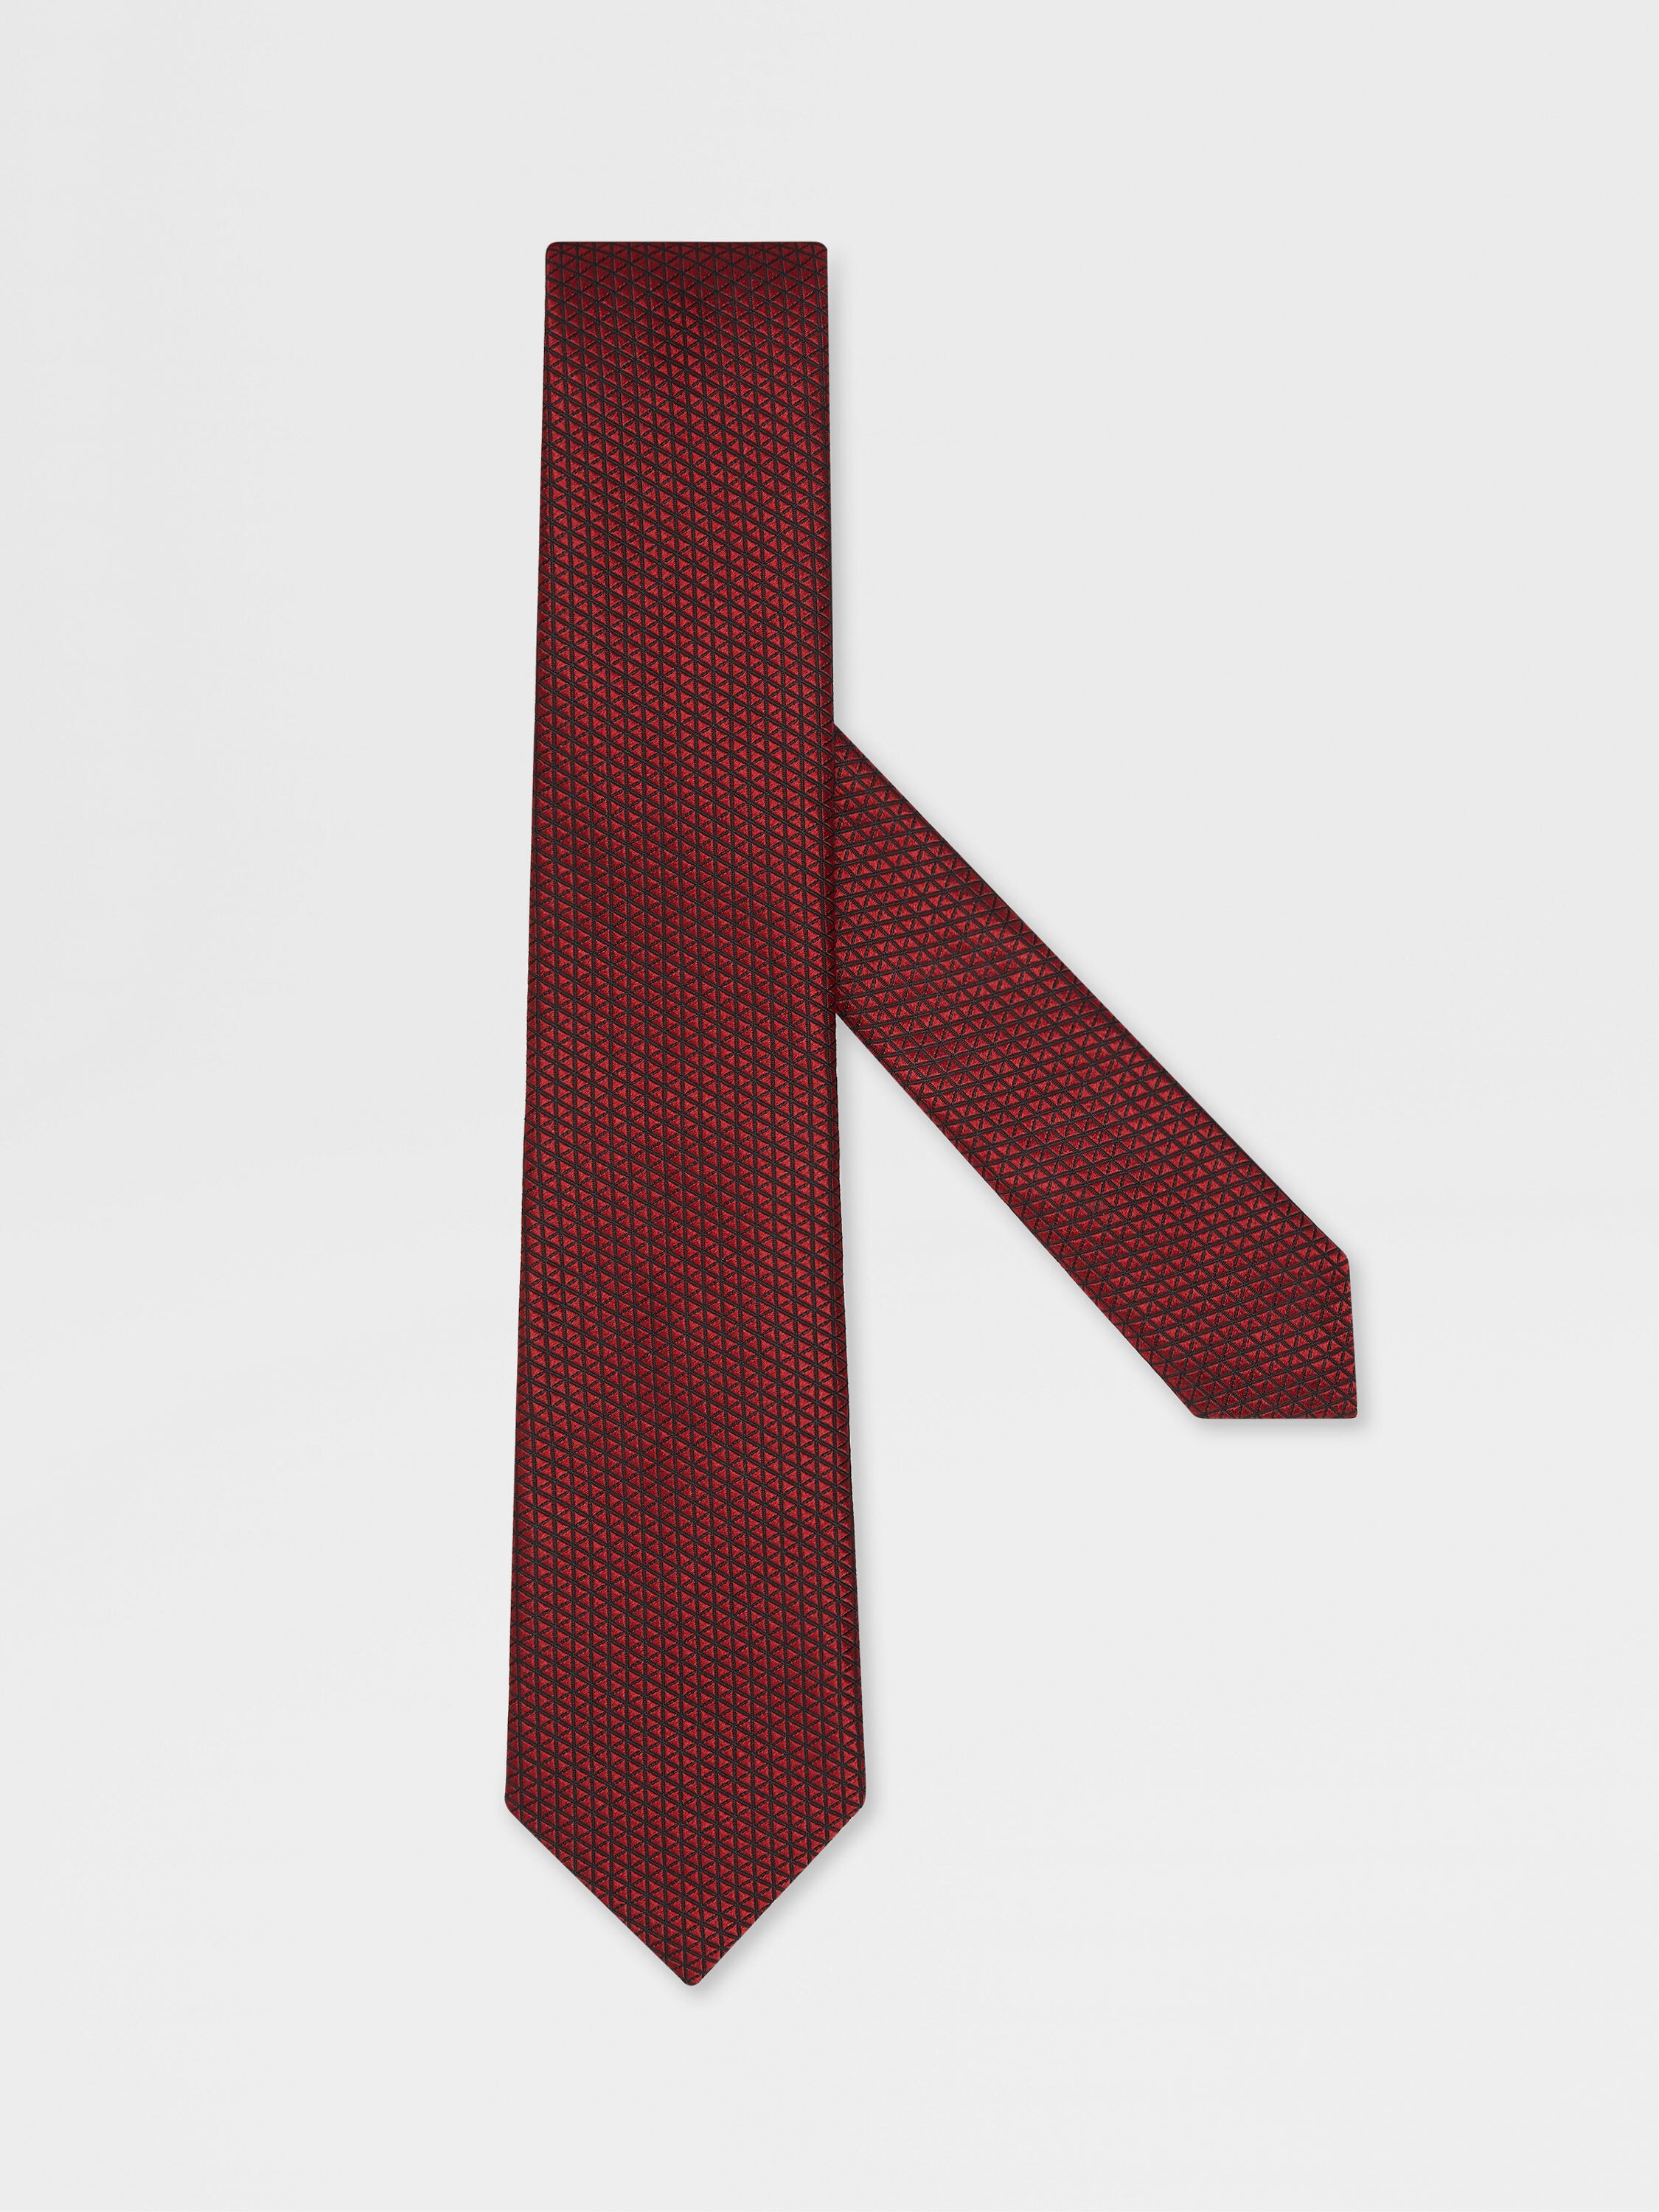 红色桑蚕丝领带